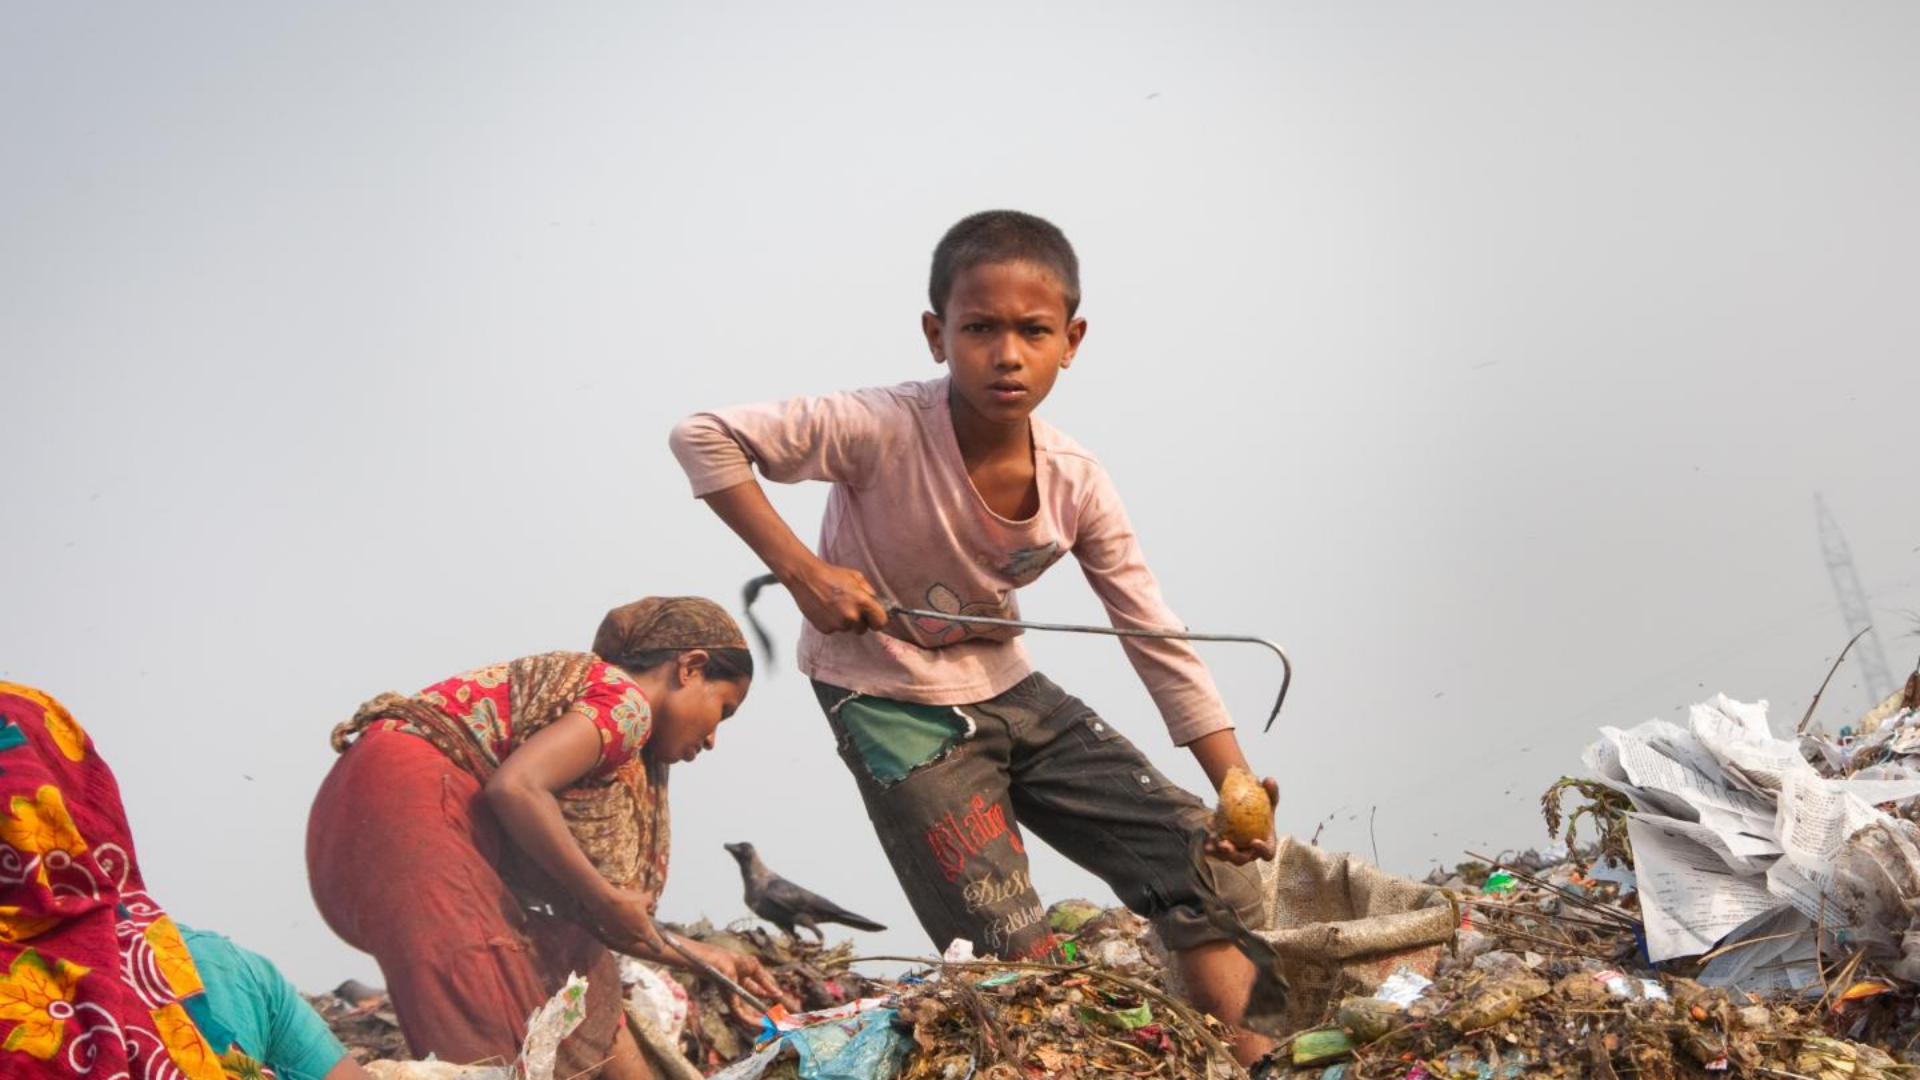 ILO reports an increase in child labor.